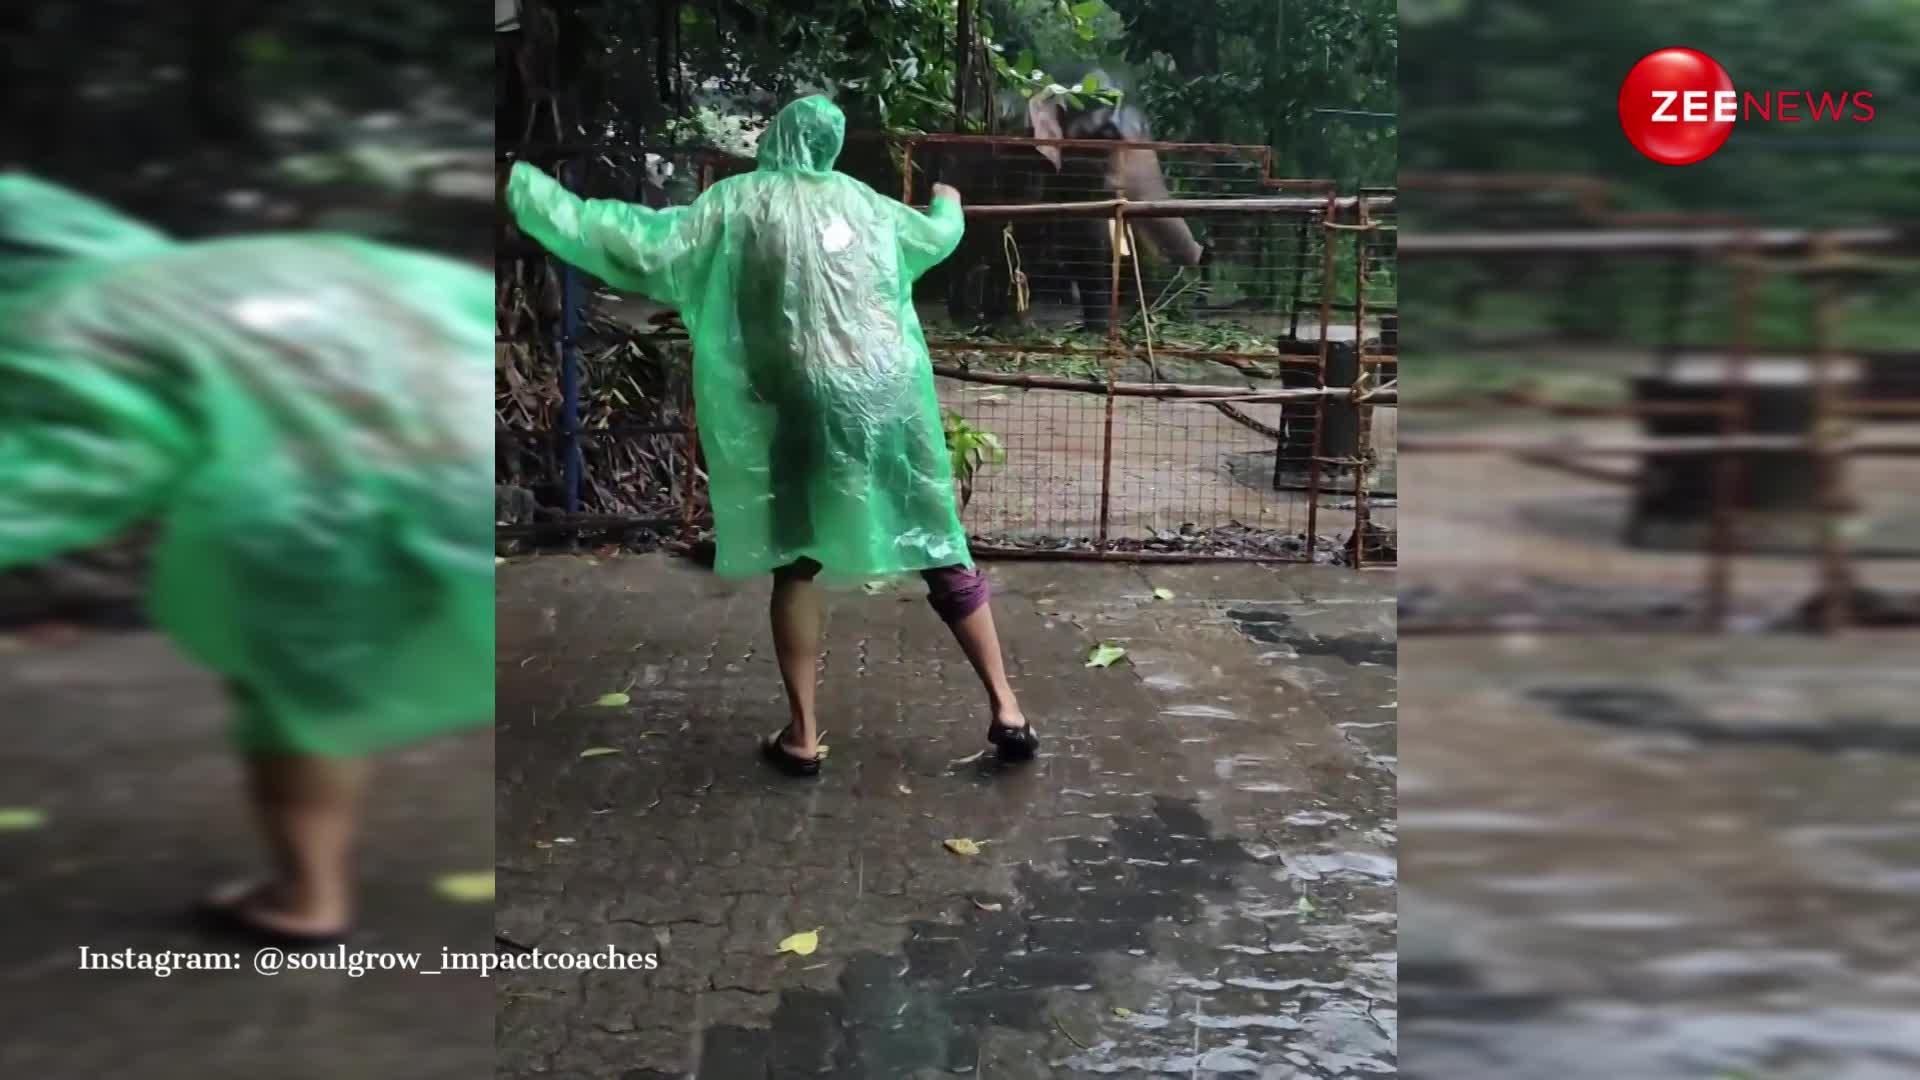 केरल घूमने गई महिला ने रोड पर किया डांस तो देख हाथी ने उतार दी नकल, बारिश में झूम उठा गजराज; VIDEO